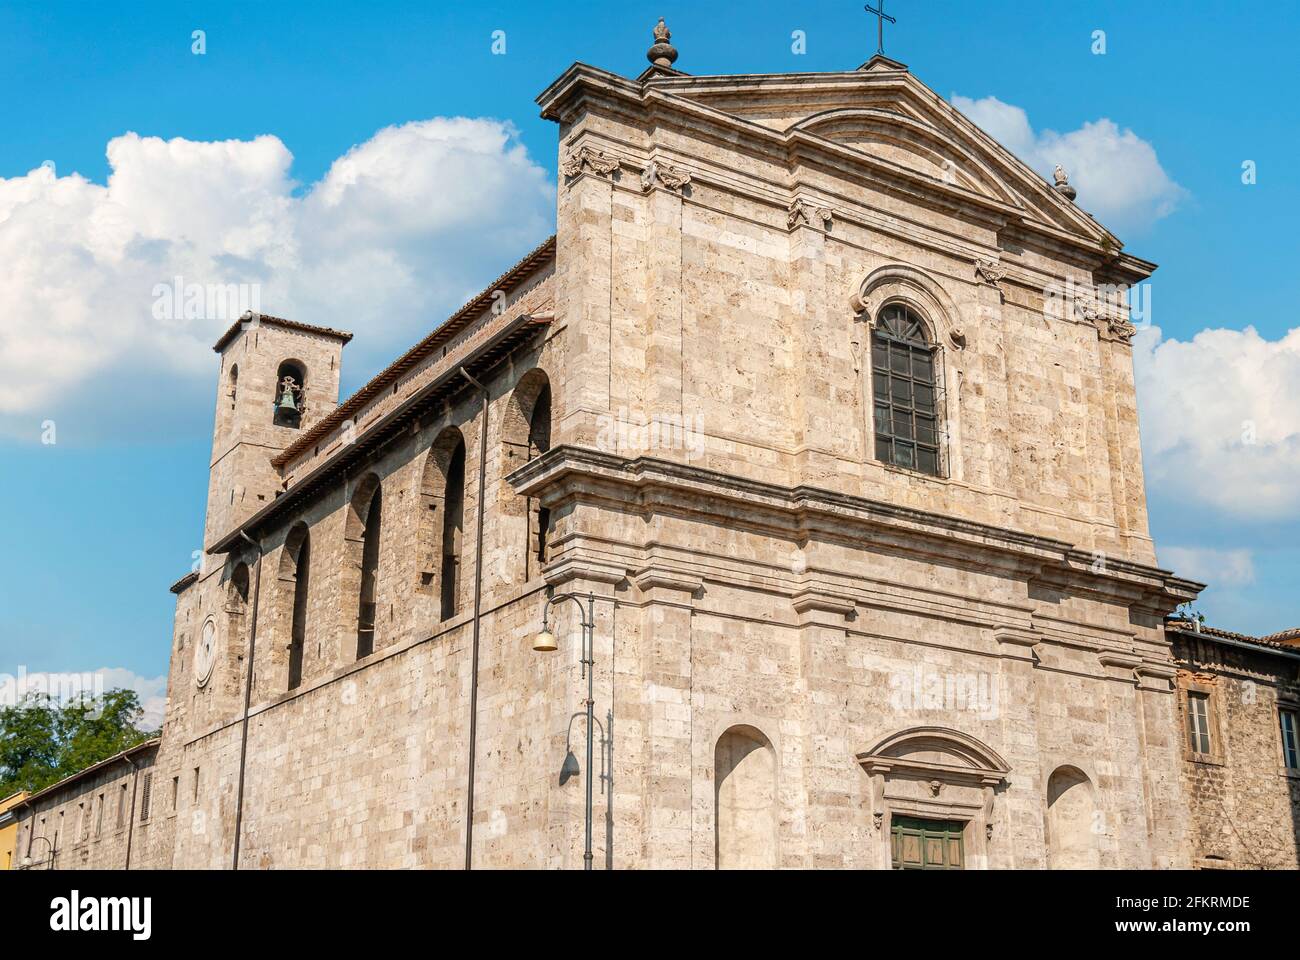 Chiesa Santa Maria delle Grazie in Ascoli Piceno, Marche, Italy Stock Photo